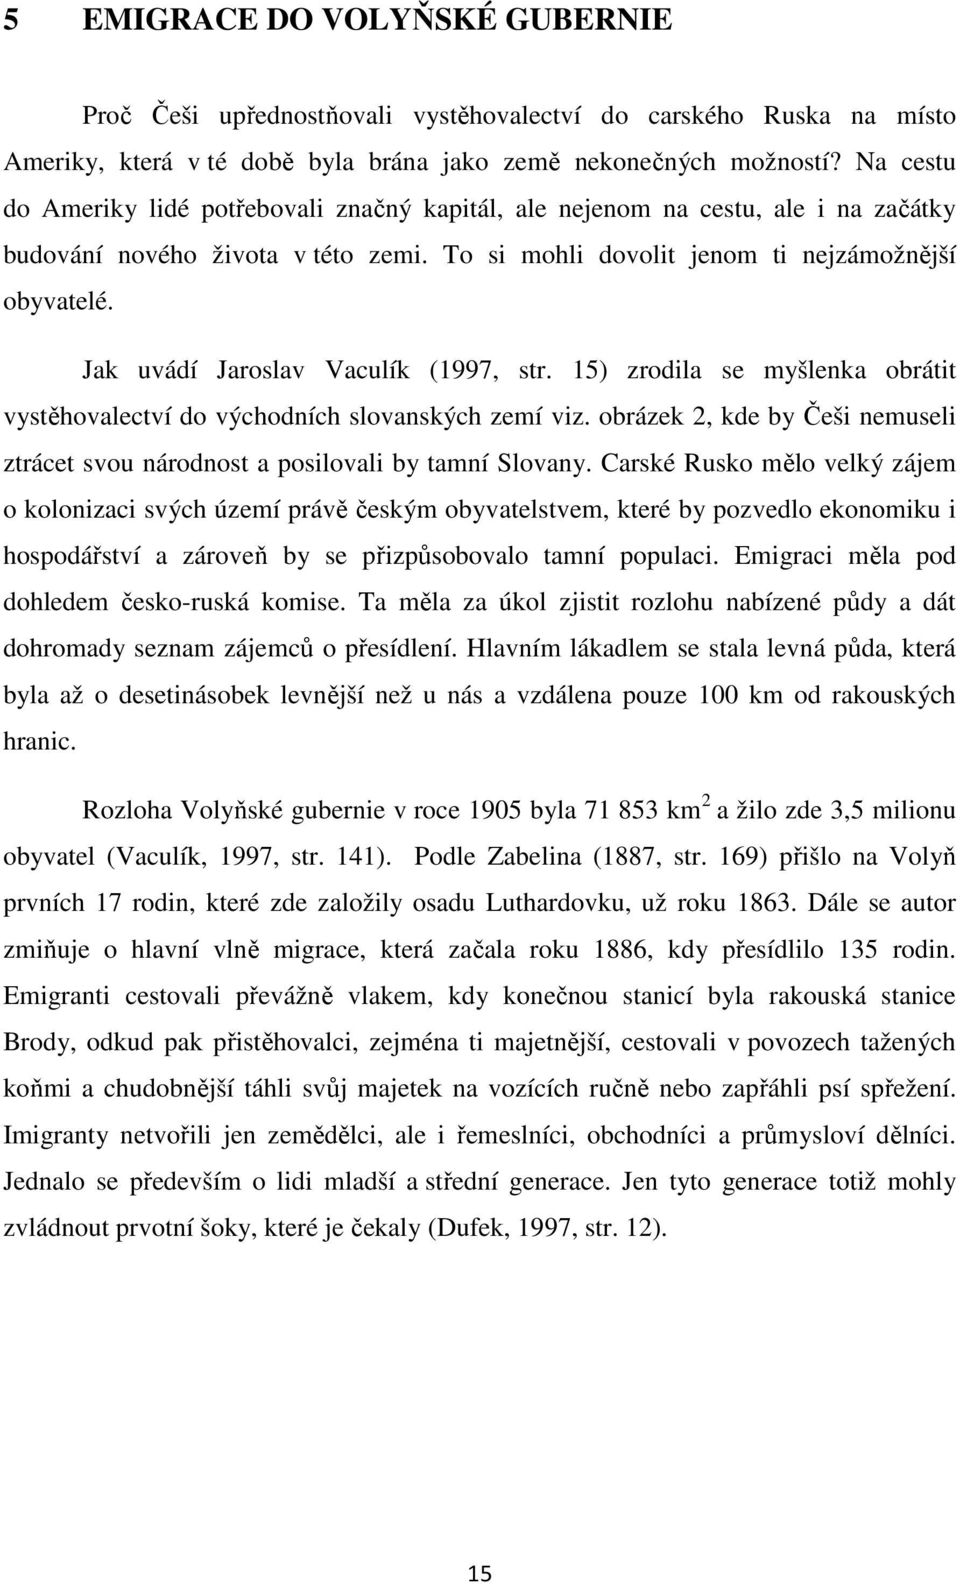 Jak uvádí Jaroslav Vaculík (1997, str. 15) zrodila se myšlenka obrátit vystěhovalectví do východních slovanských zemí viz.